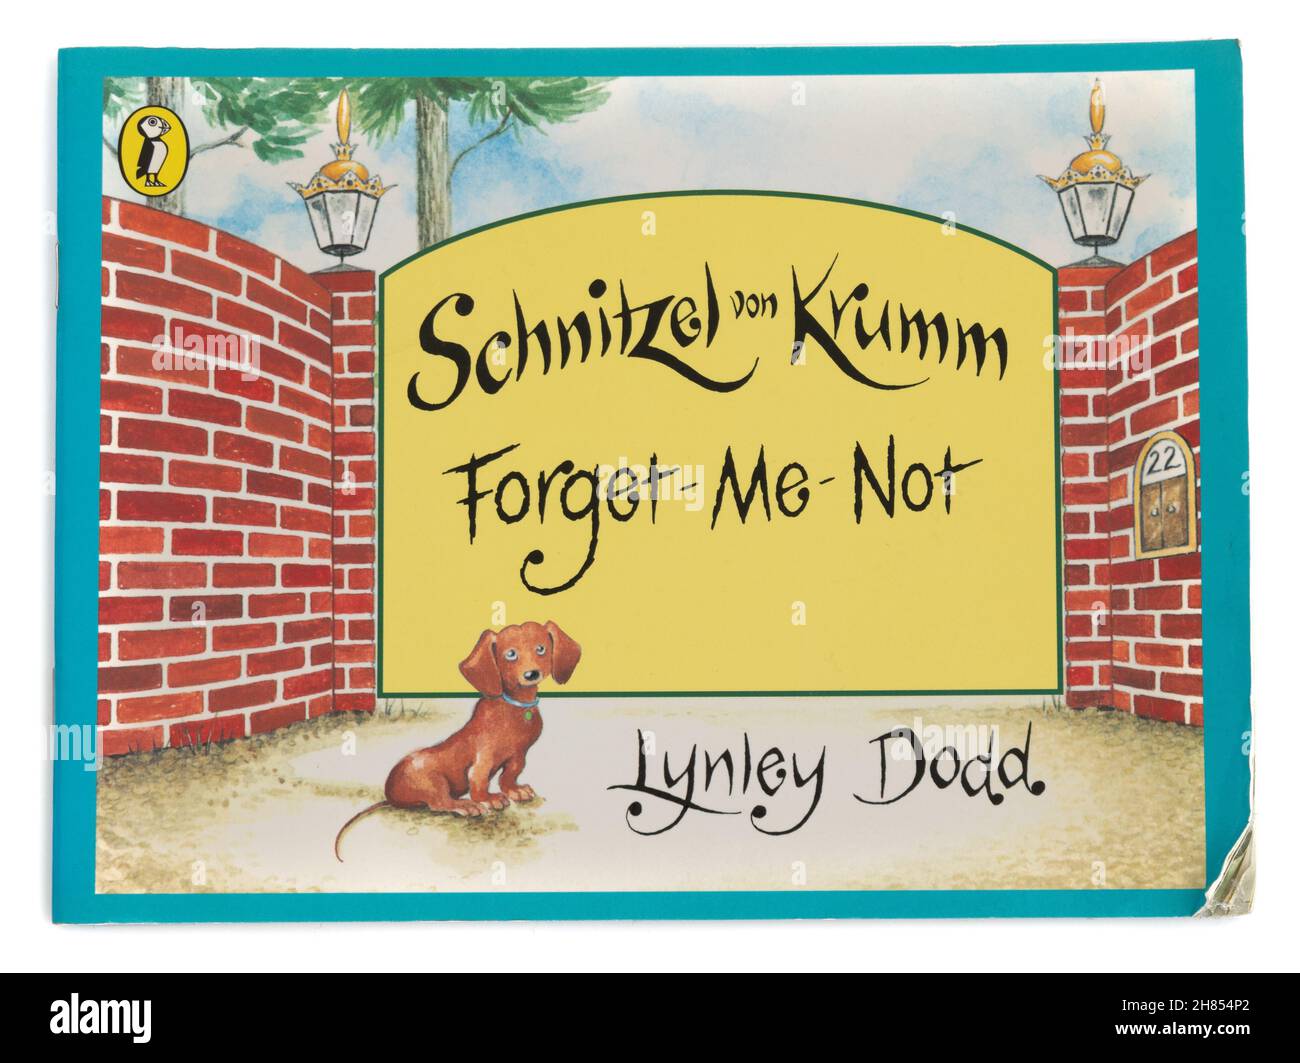 Schnitzel von Krumm Forget-Me-Not Picture Book de Lynley Dodd Foto de stock